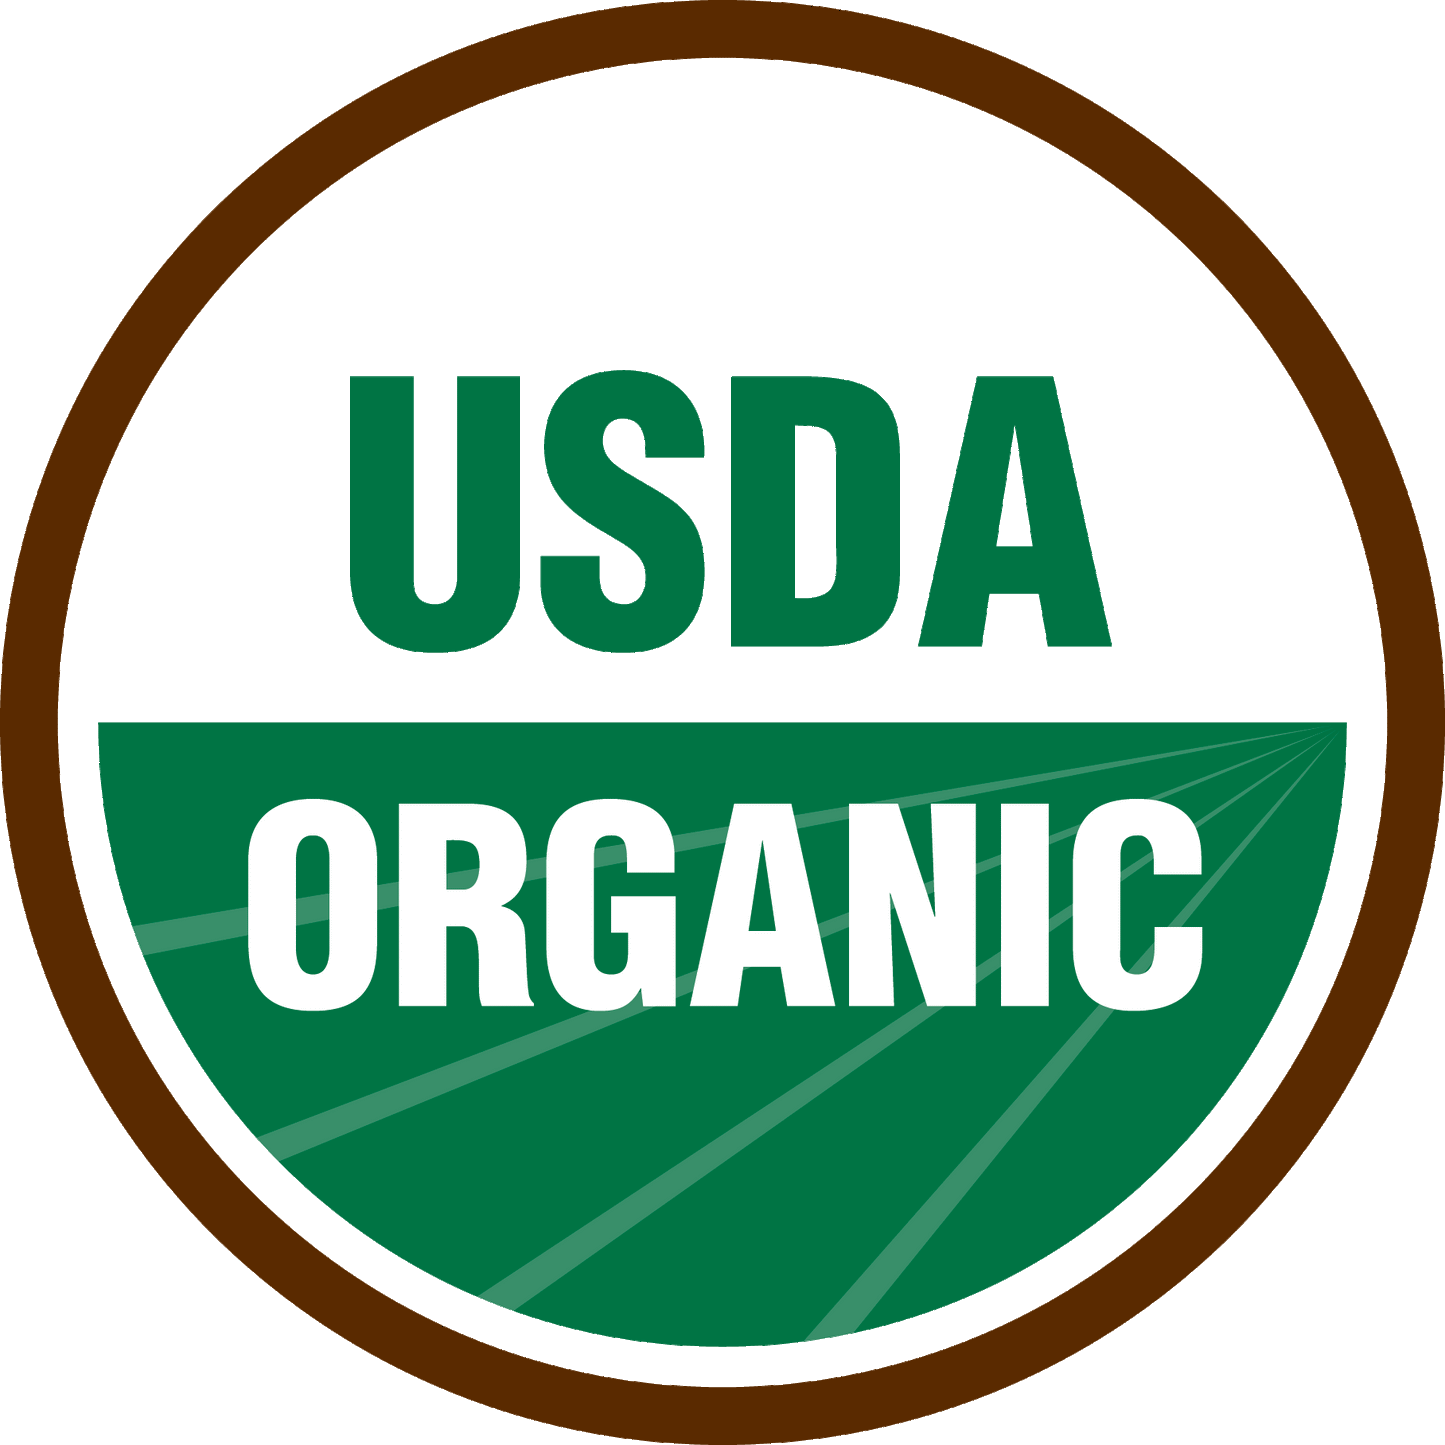 California's Organic Gift 11lbs.